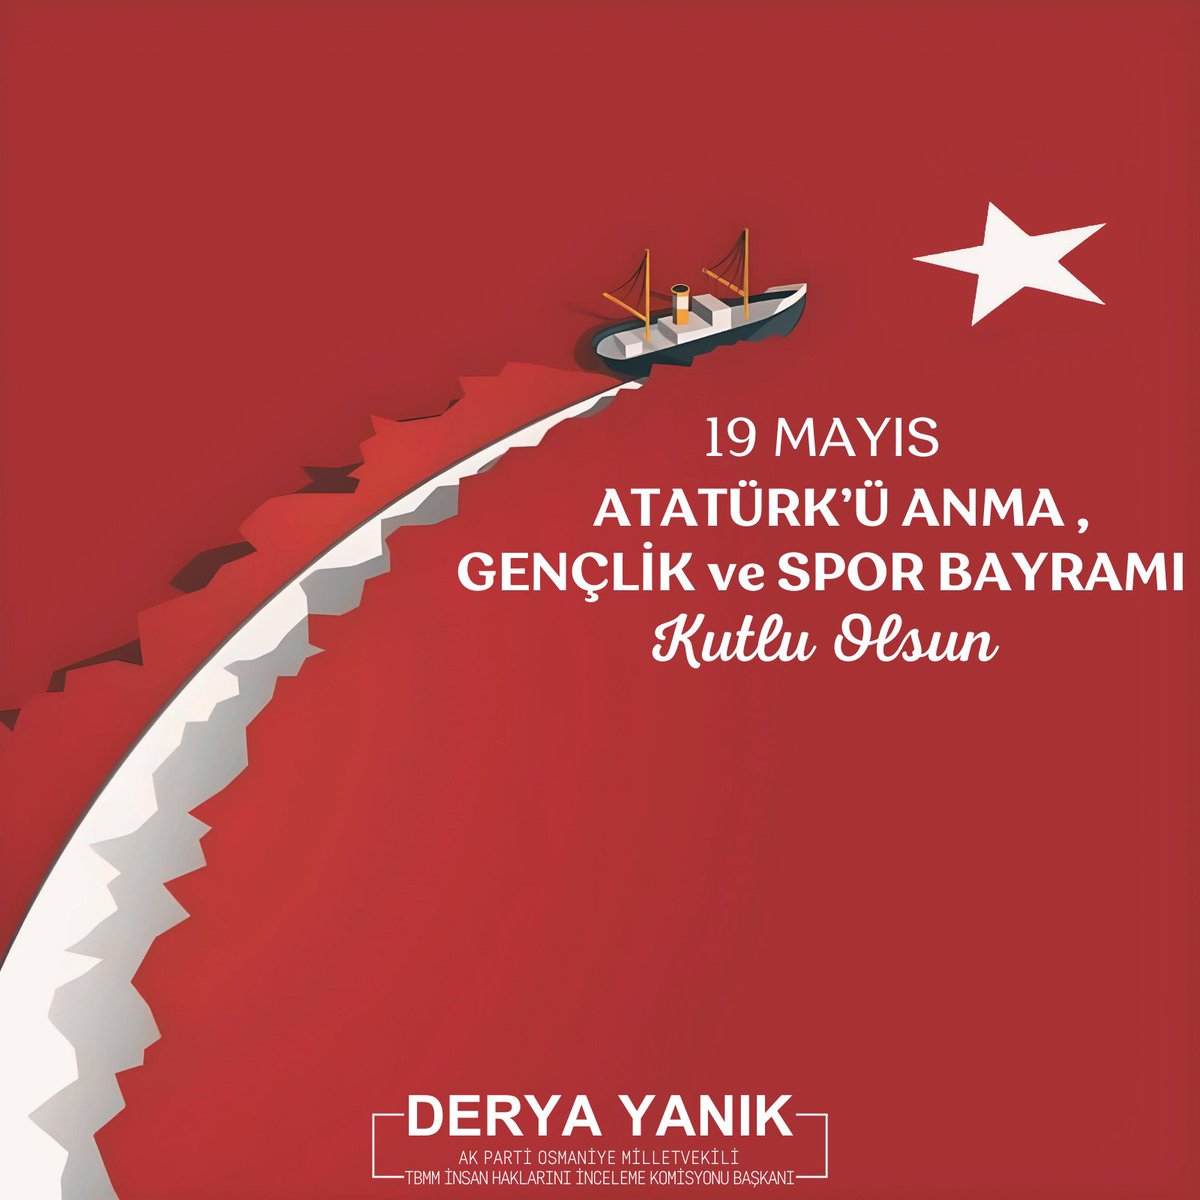 Milli mücadelenin dönüm noktalarından biri 19 Mayıs… ve bu güzel gün gençlerin günü! Başta Gazi Mustafa Kemal Atatürk olmak üzere Milli Mücadele kahramanlarımızı minnetle yâd ediyor; 19 Mayıs Atatürk’ü Anma, Gençlik ve Spor Bayramının gençlerimize ve ülkemize hayırlı olmasını